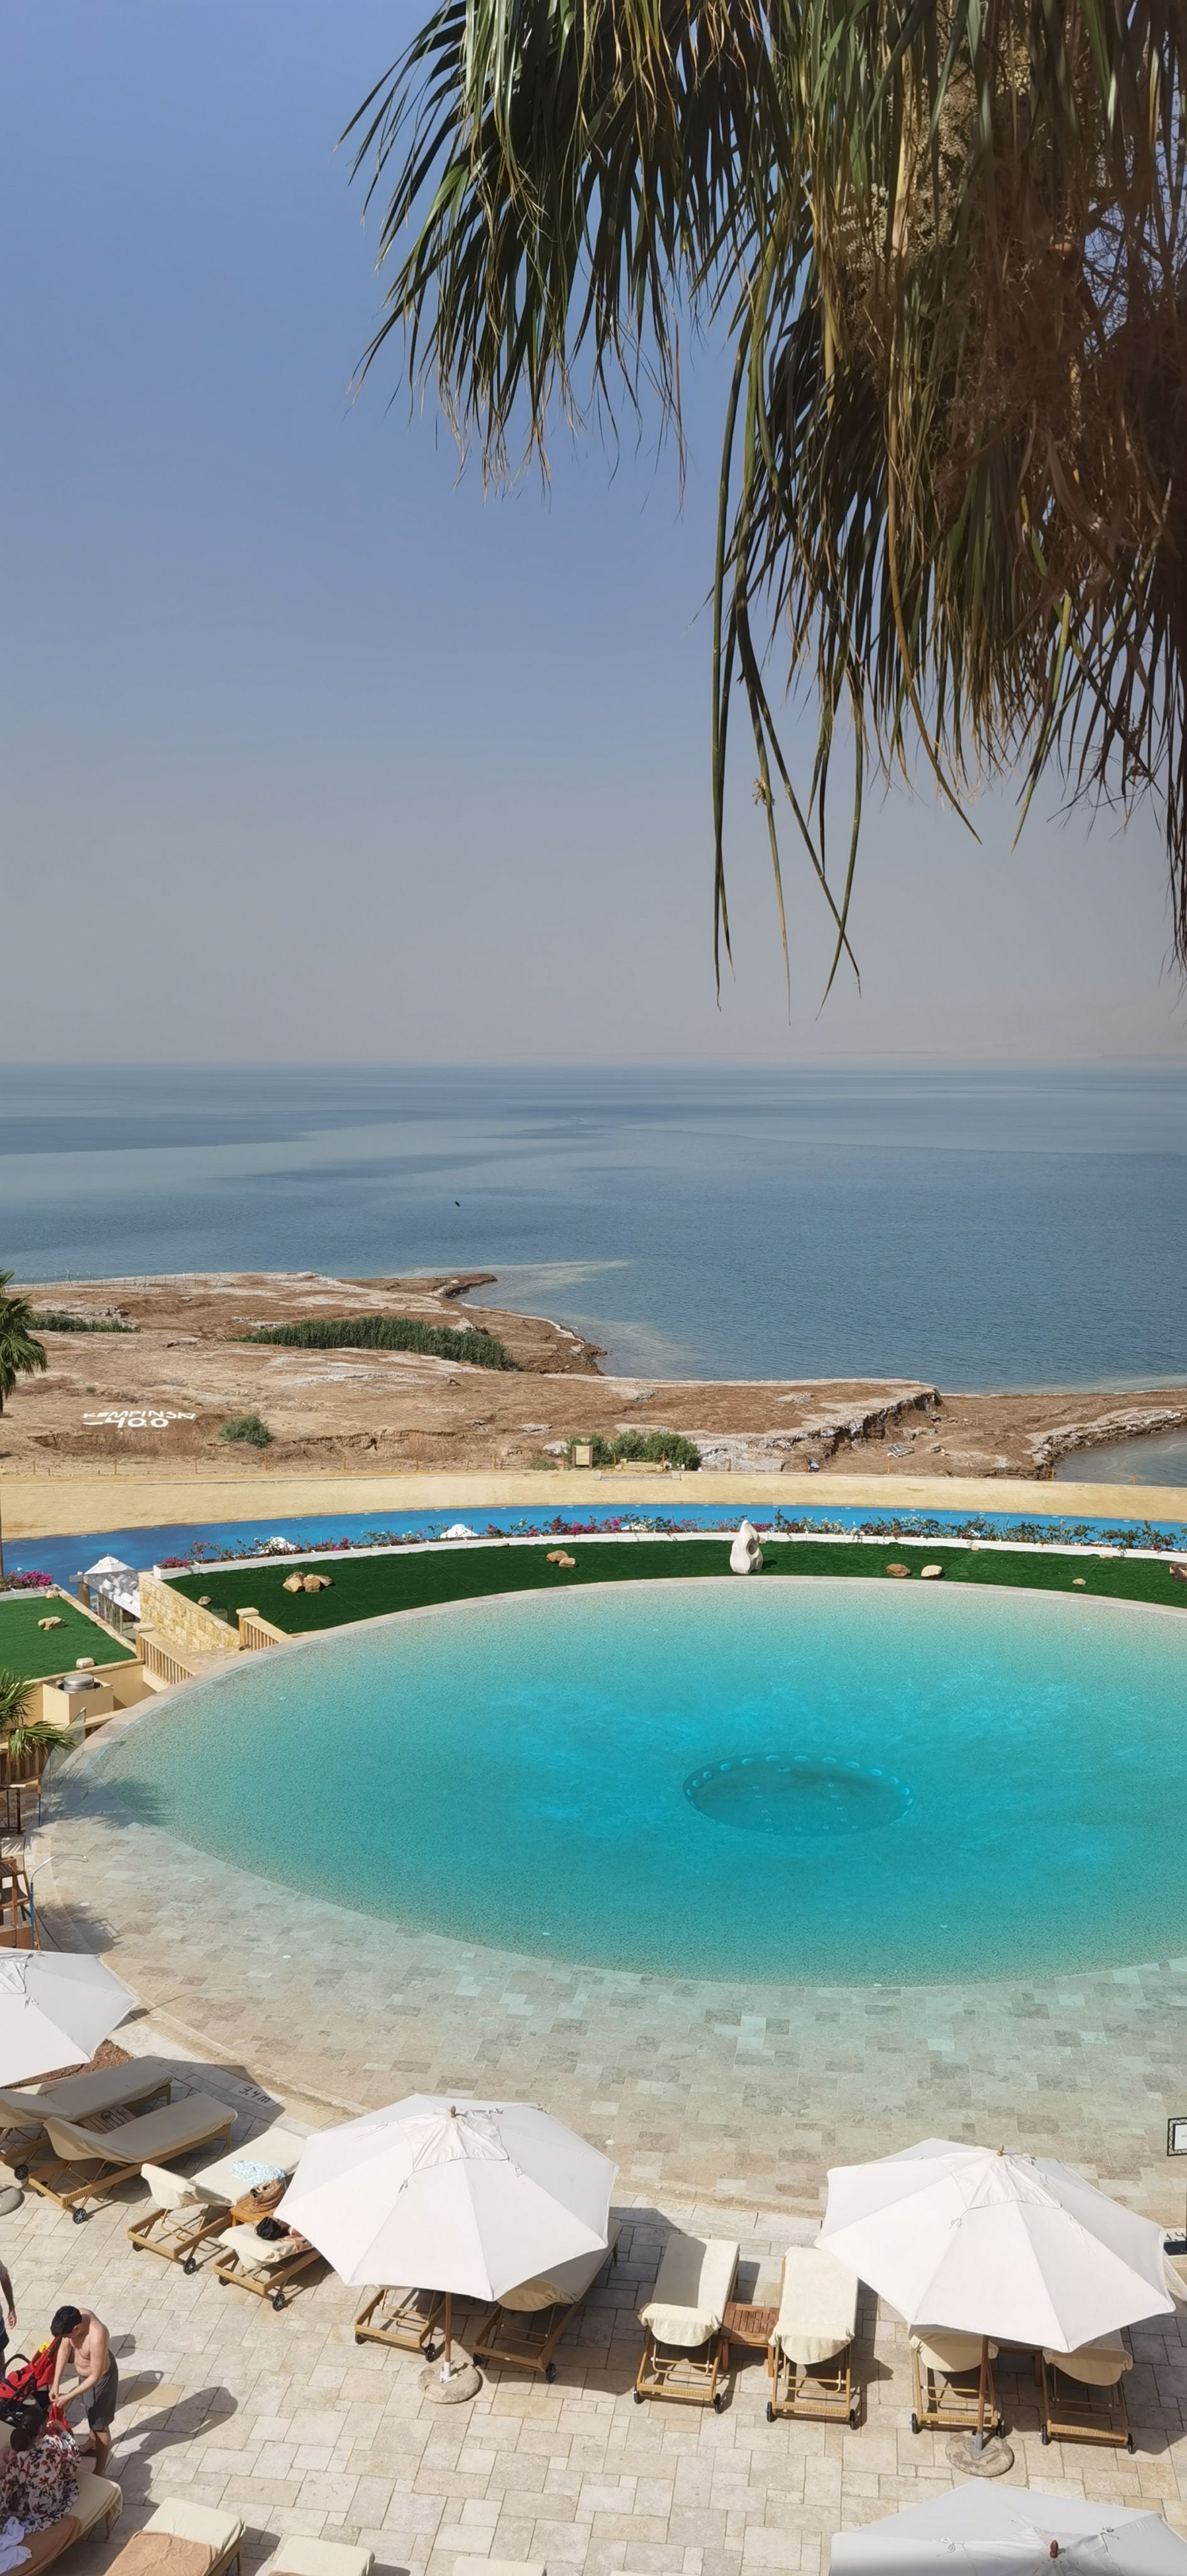 完美的入住体验，弧形无边泳池和死海相连景色绝佳，酒店私人沙滩可以直接在死海漂浮，并备好了死海泥可以涂